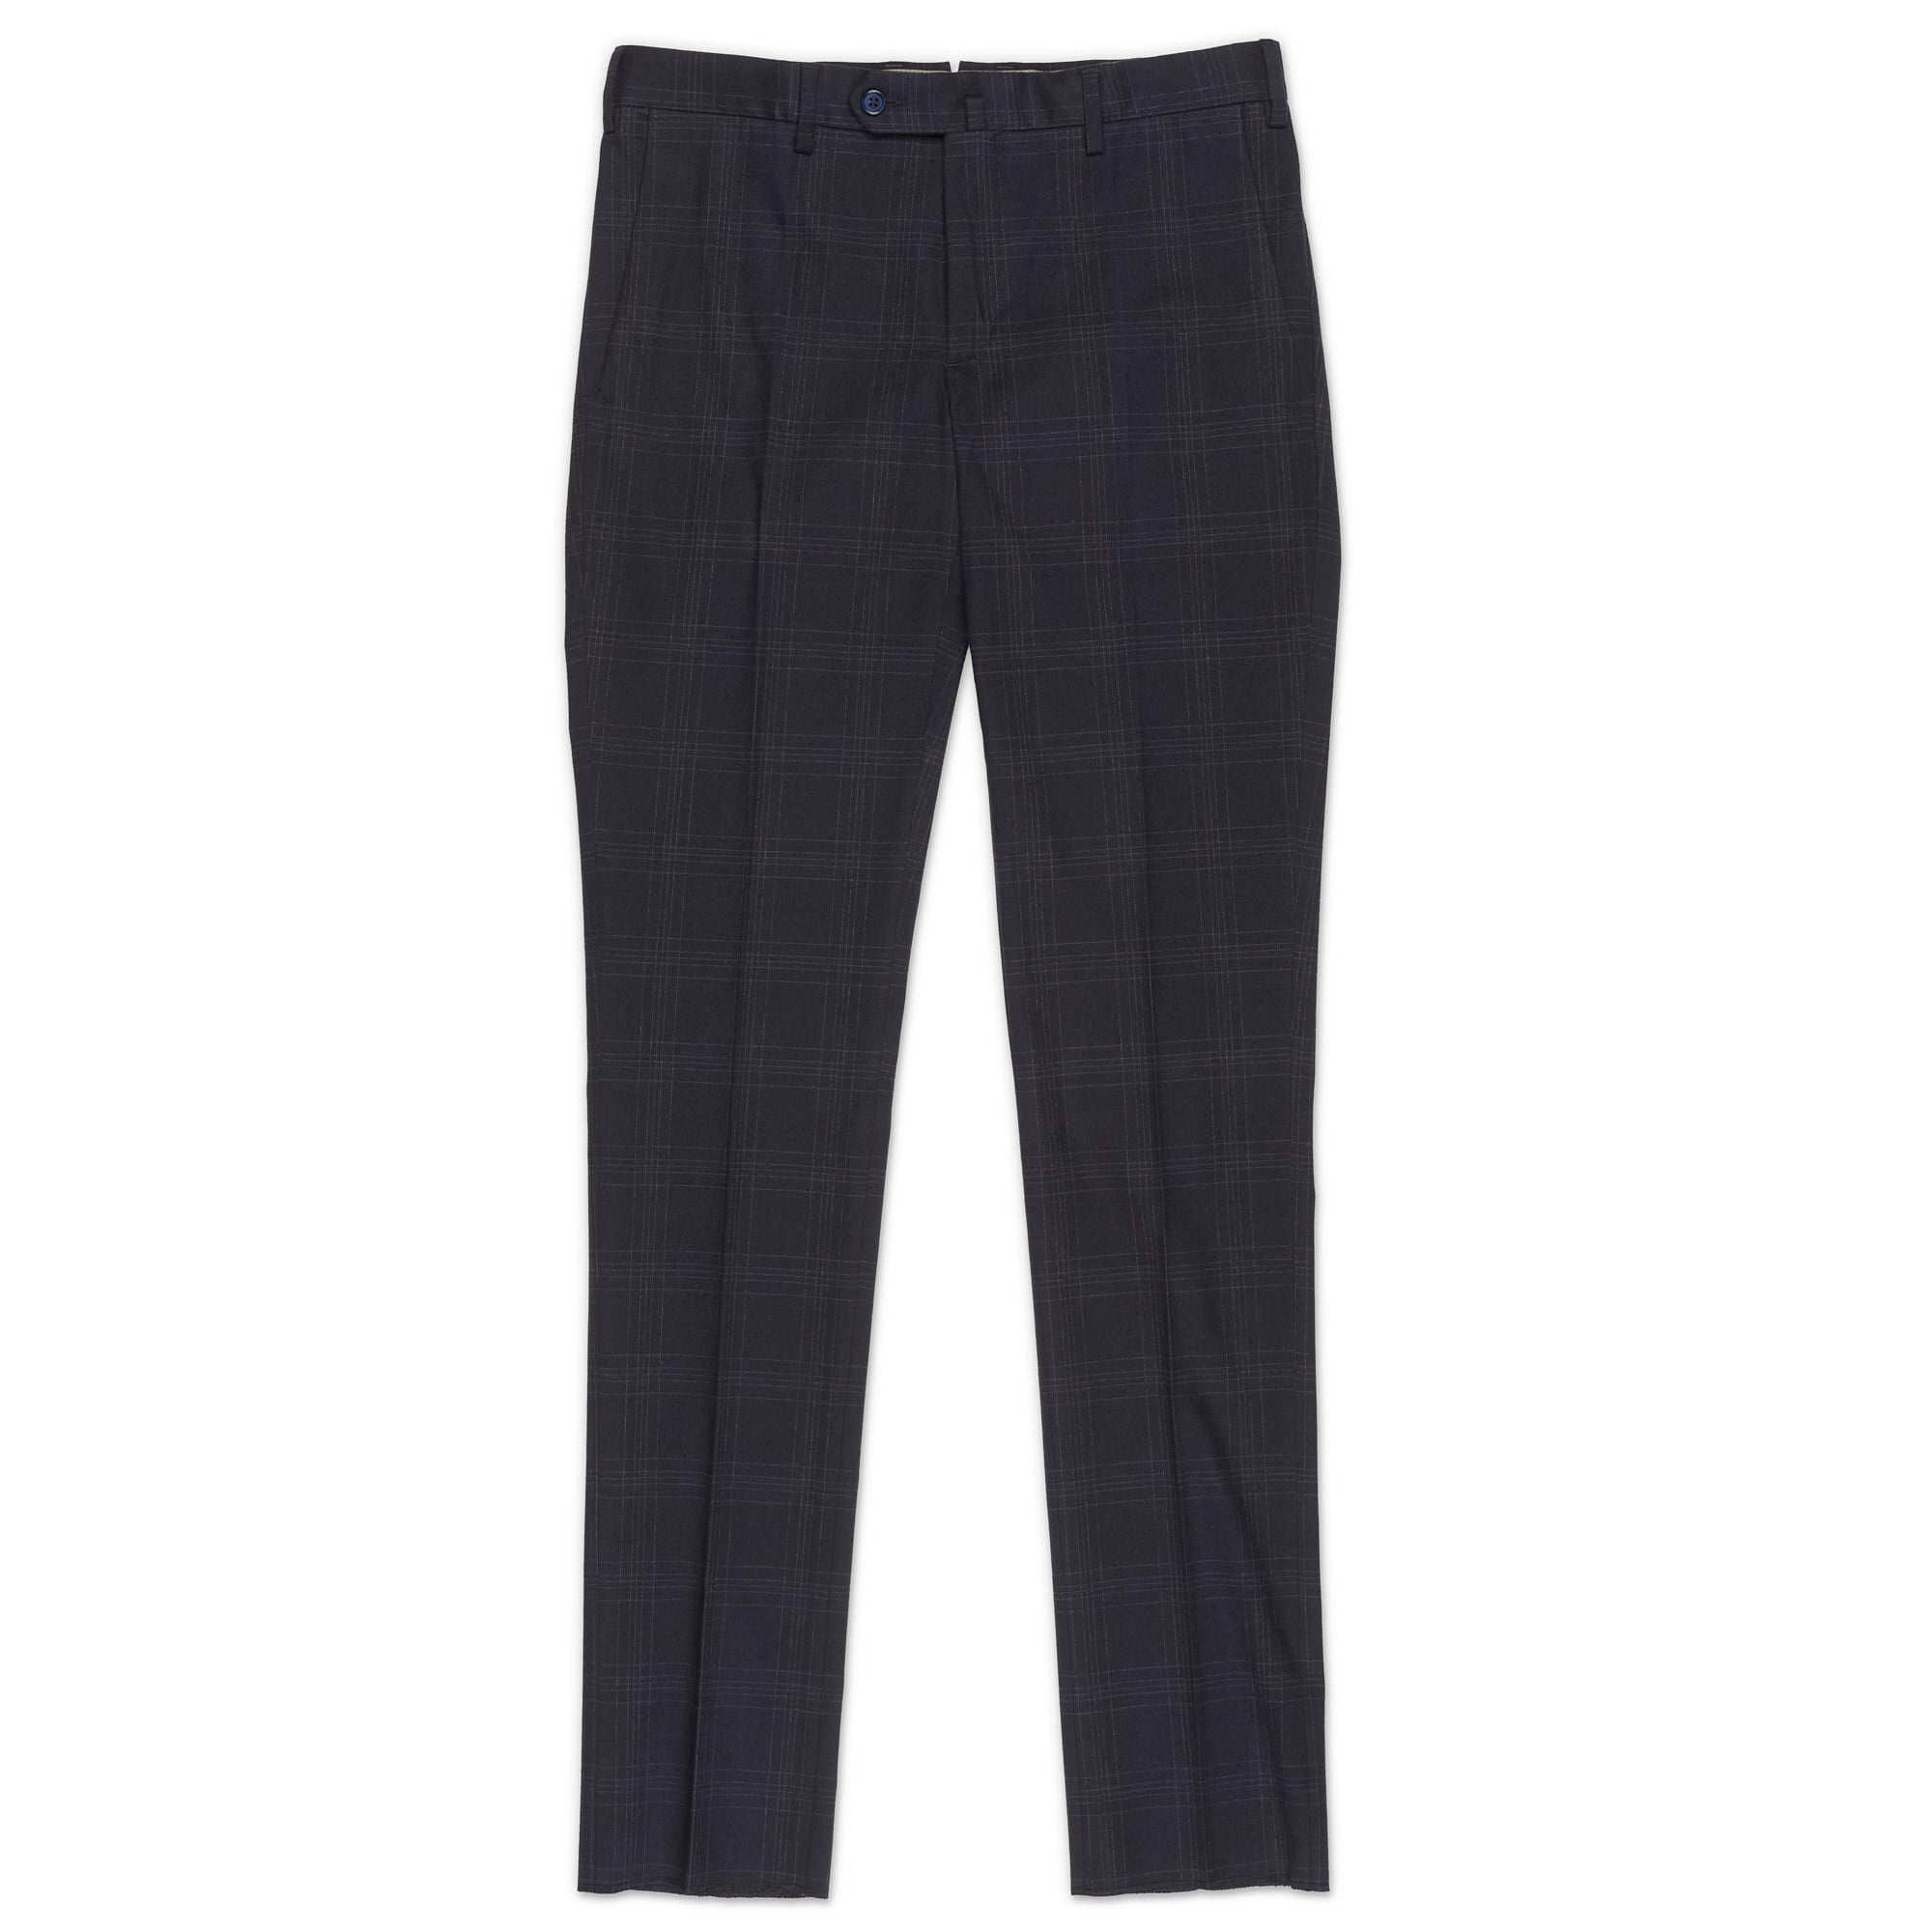 INCOTEX (Slowear) Blue Plaid Cotton Twill Pants EU 46 NEW US 30 Slim Fit INCOTEX